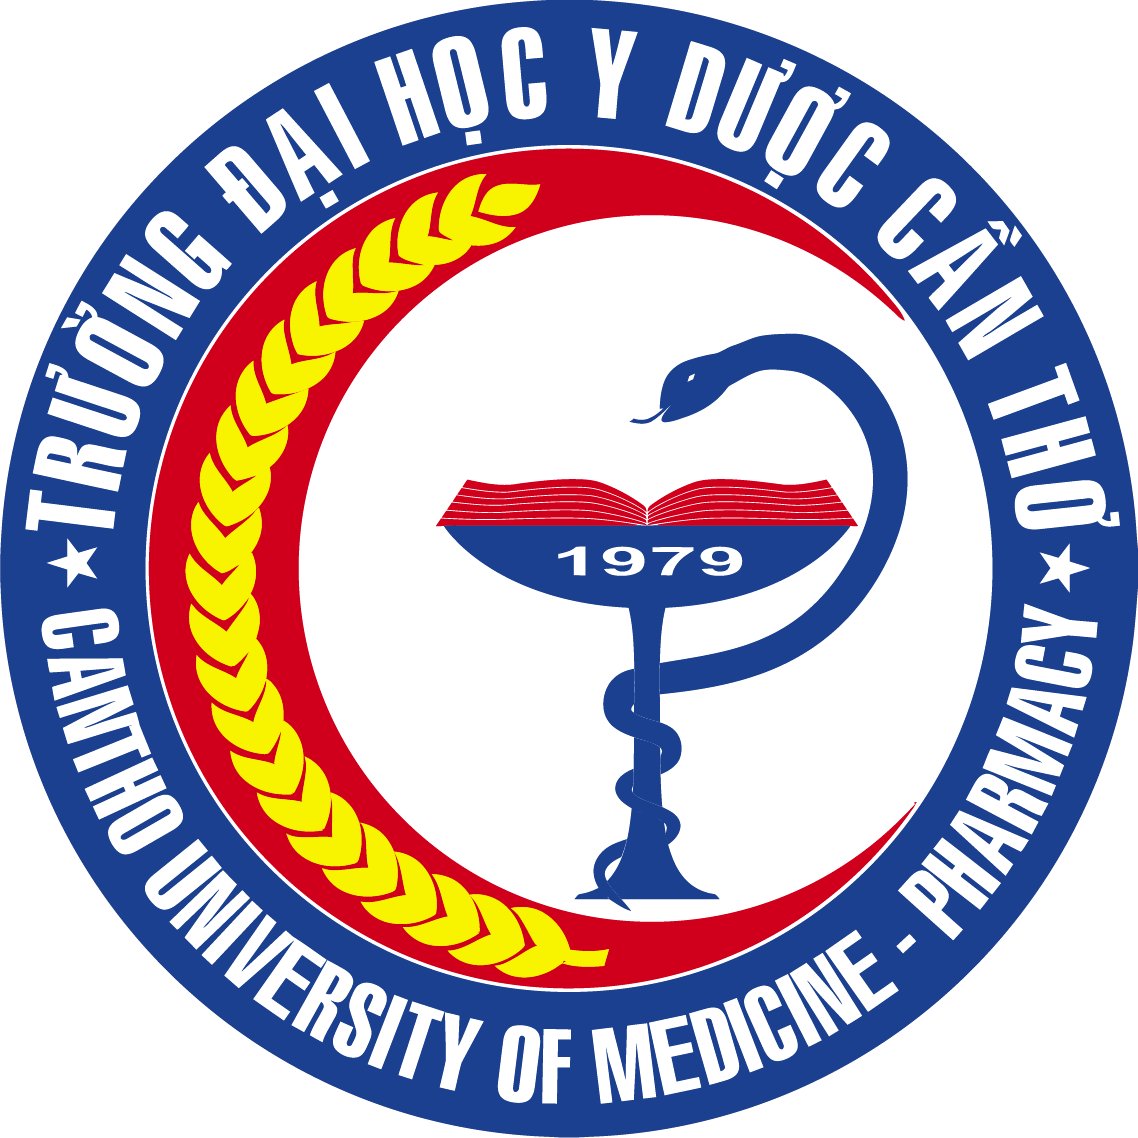 Thiết kế logo đại học y dược cần thơ đẹp và chuyên nghiệp